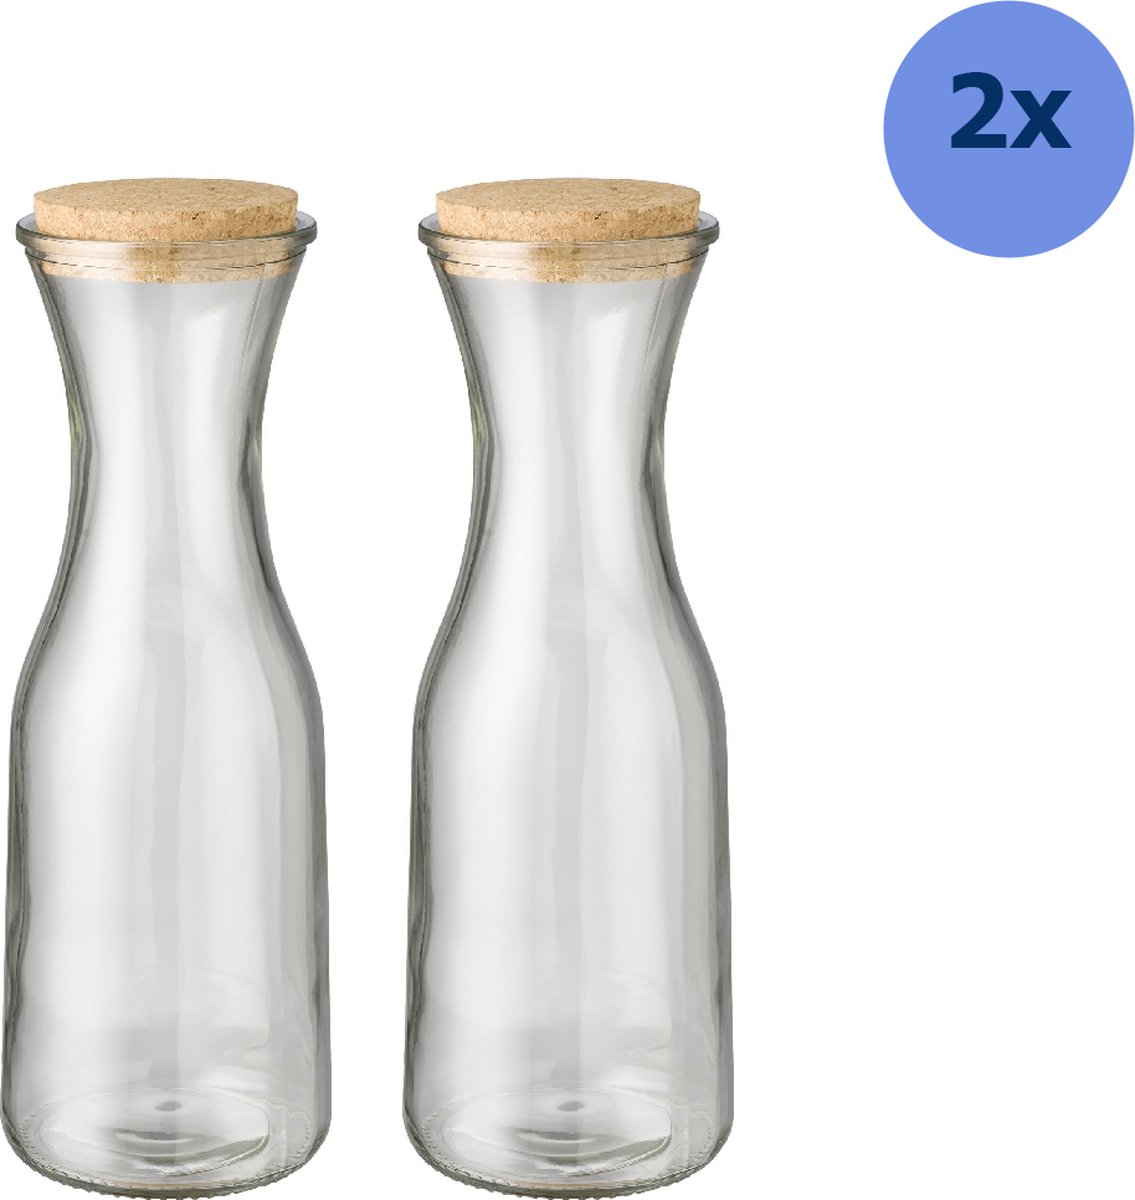 Waterkan - Set van 2 Stuks - - Waterkan met Deksel - Gerecycled Glas - 2x 1 Liter - Waterkaraf